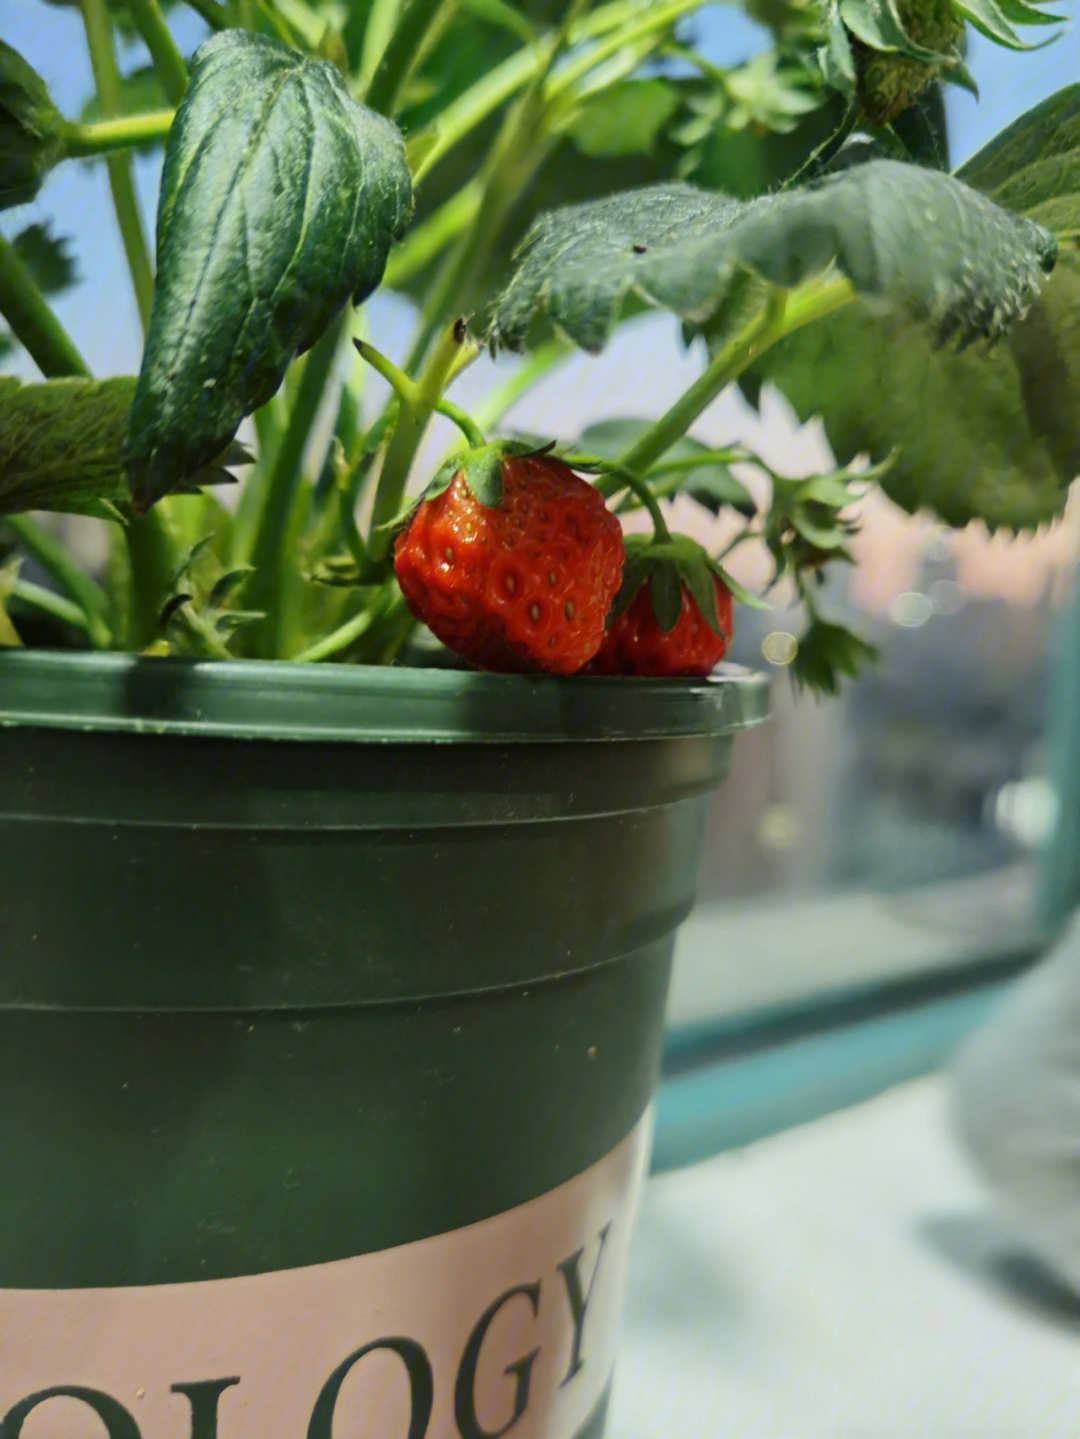 作为一个果农的快乐收获草莓